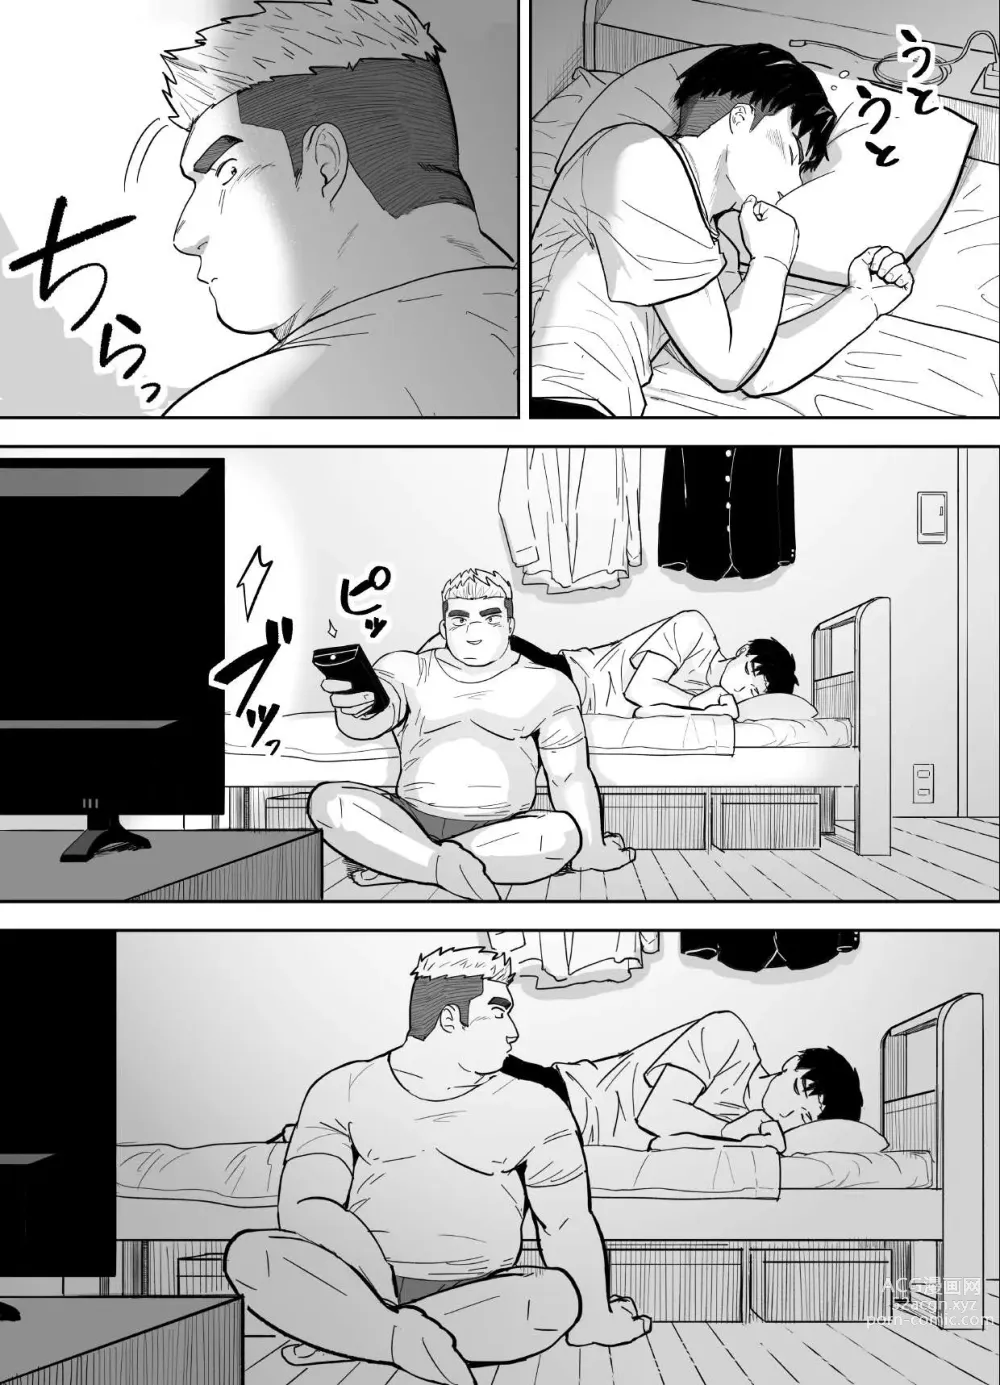 Page 5 of manga 片思いしてるガチムチ同級生に襲われる話